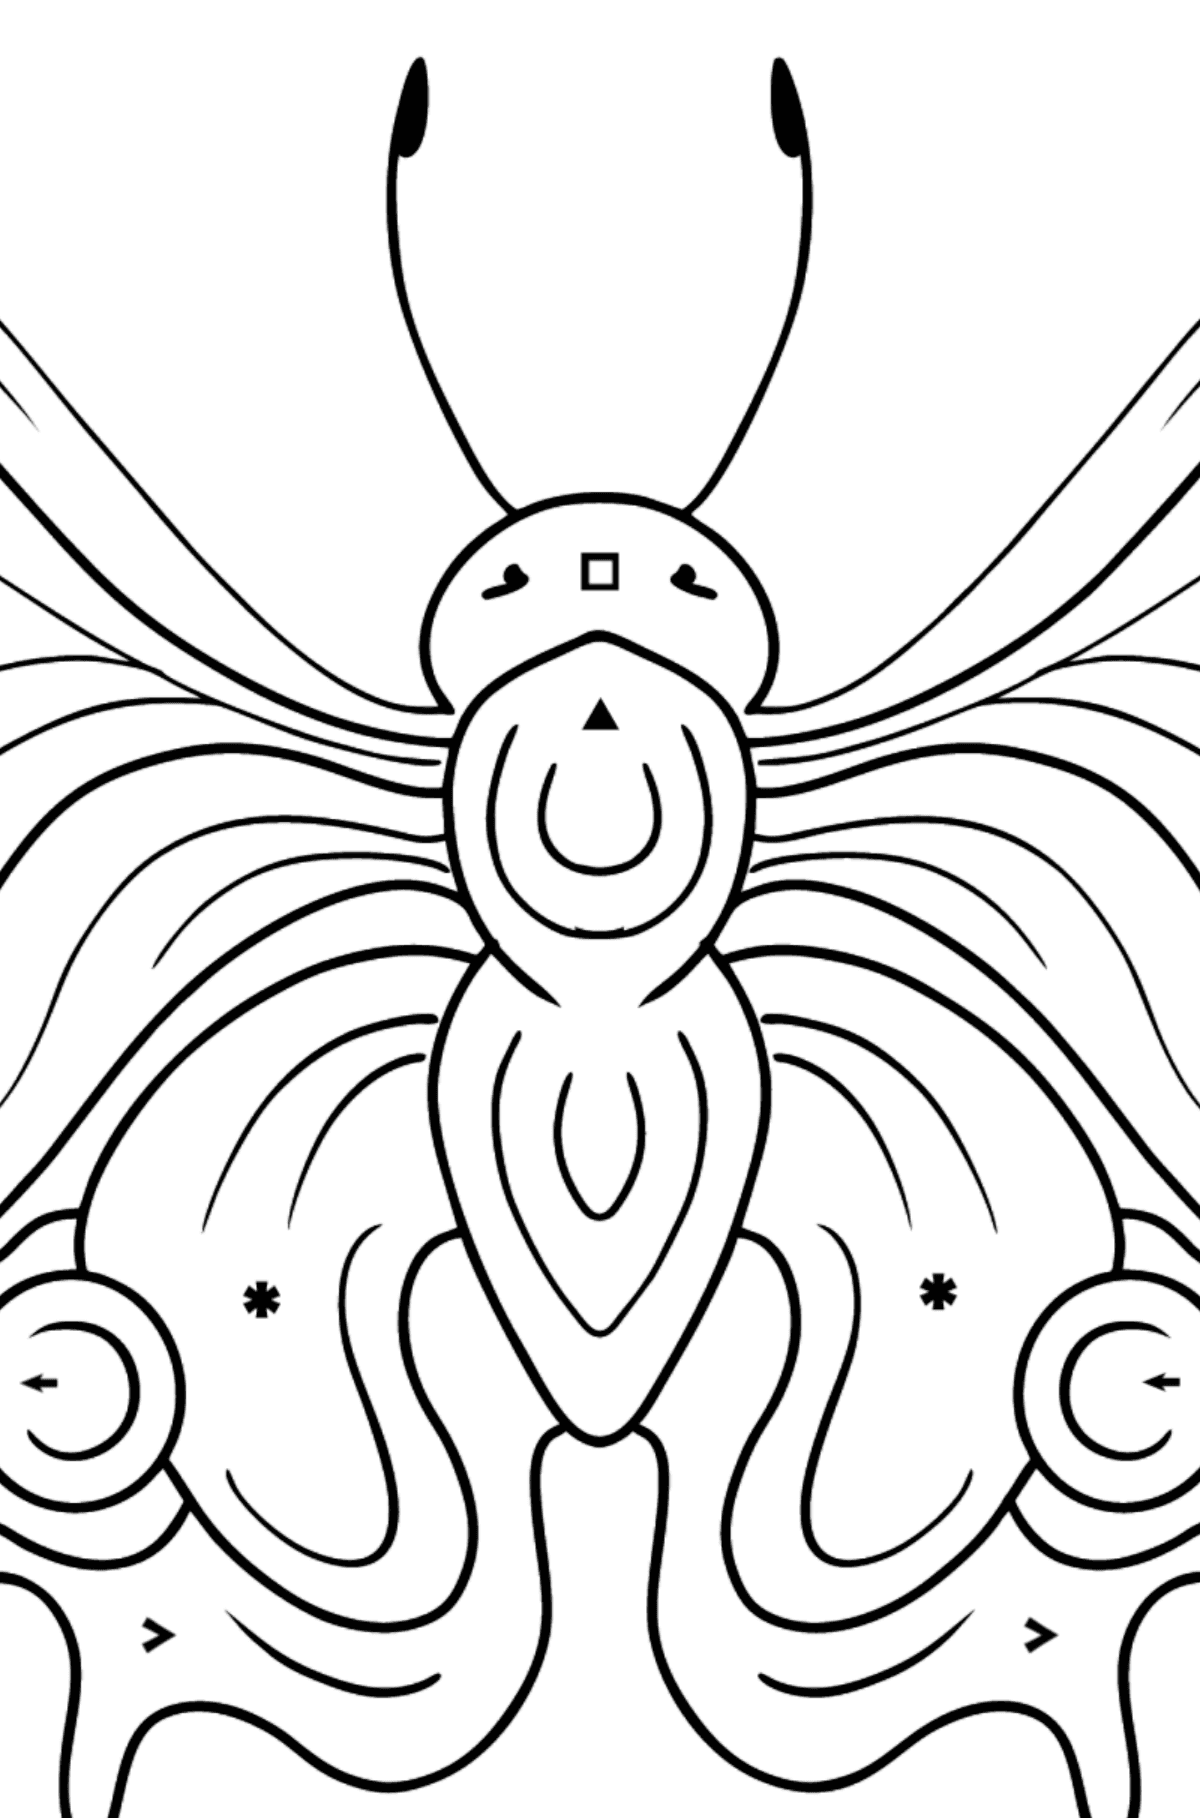 Kleurplaat pauw vlinder - Kleuren met symbolen voor kinderen